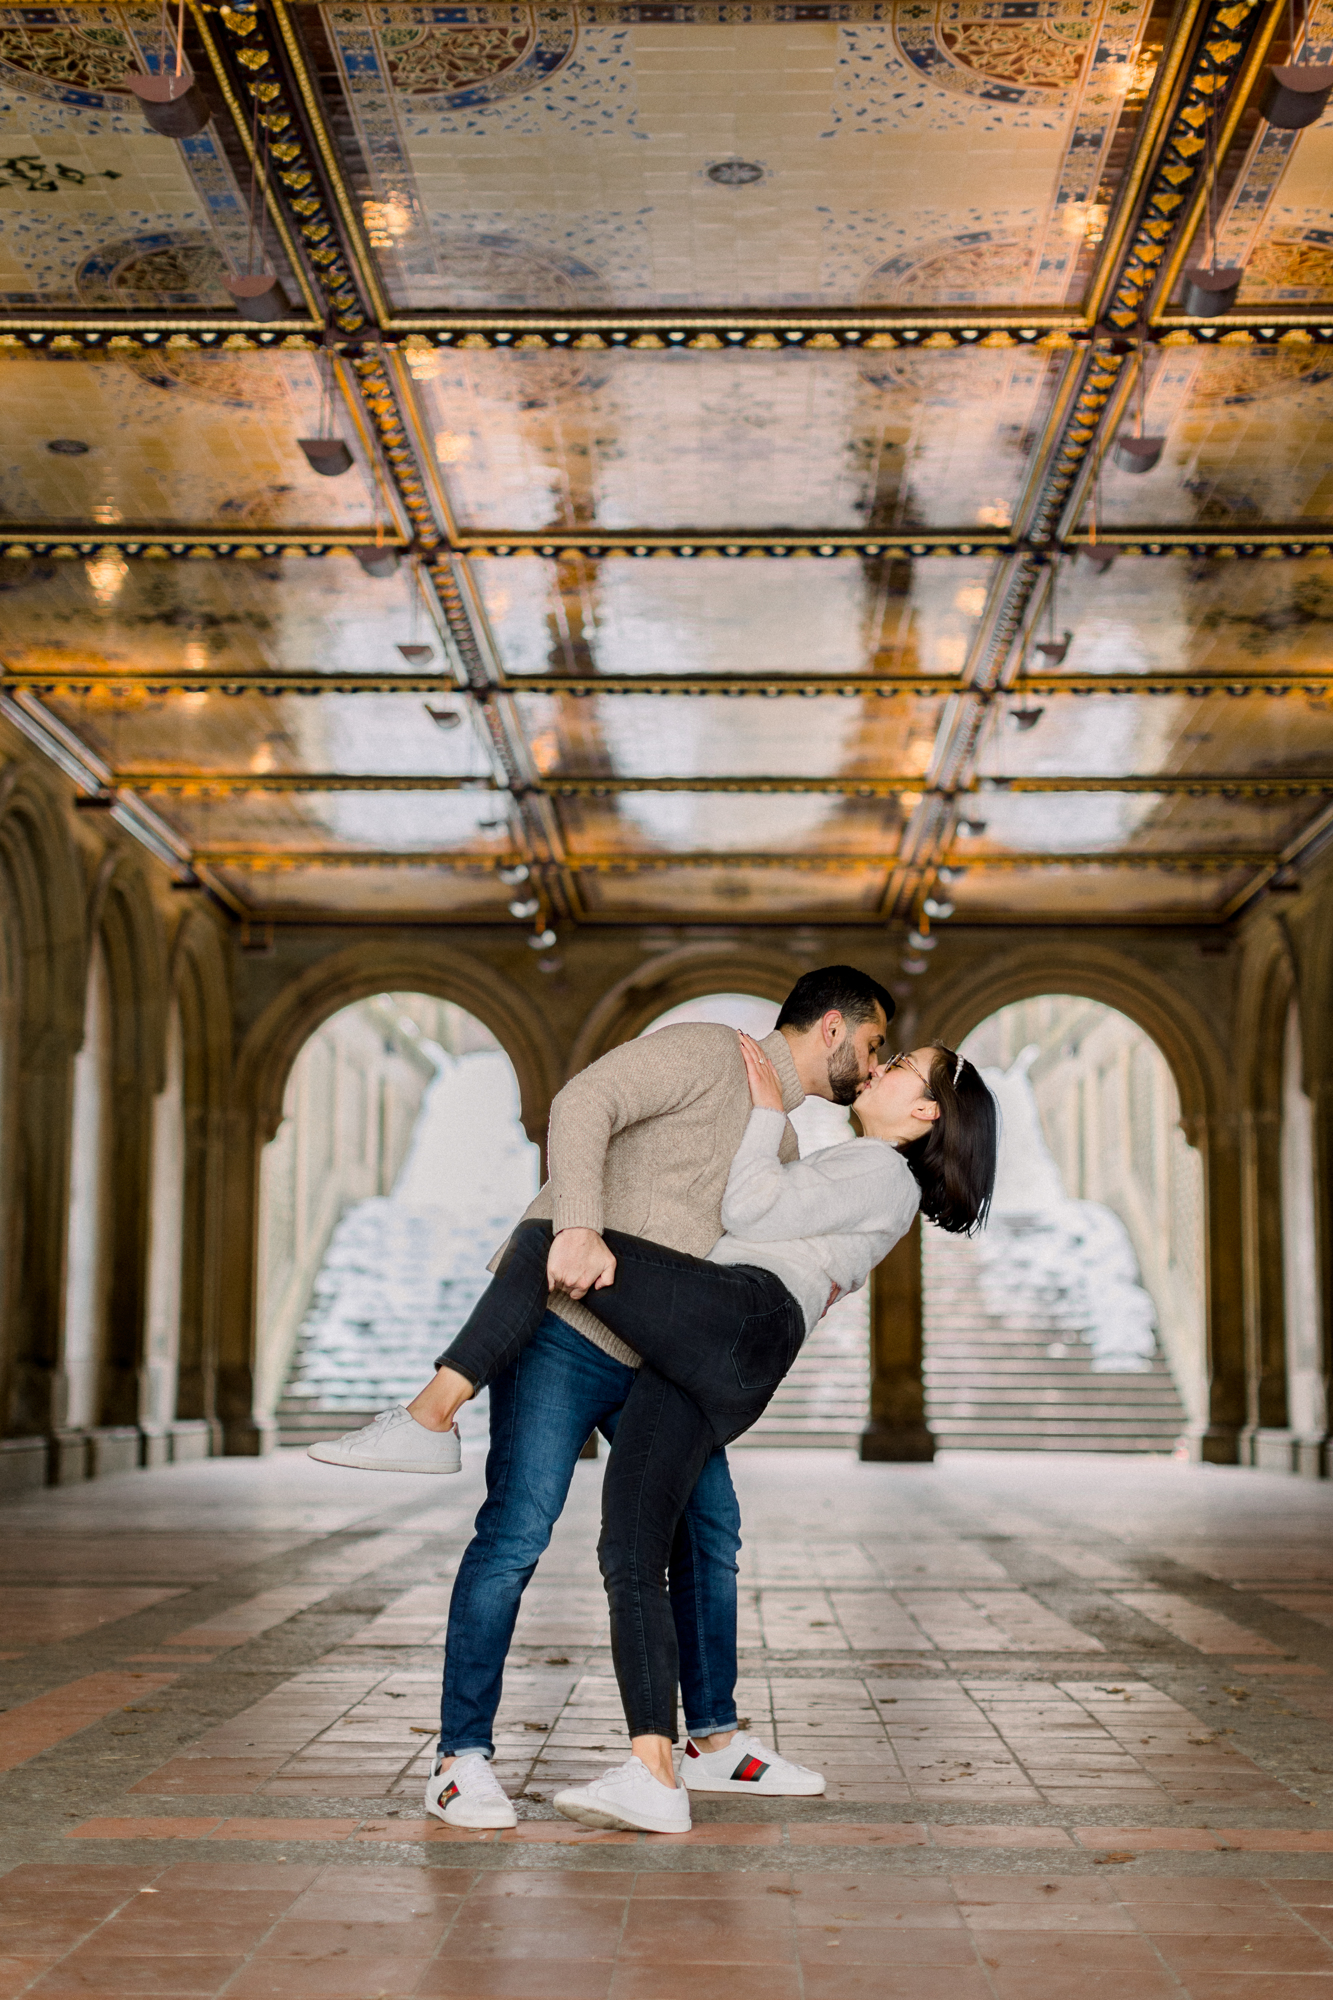 Romantic Central Park Engagement Photography